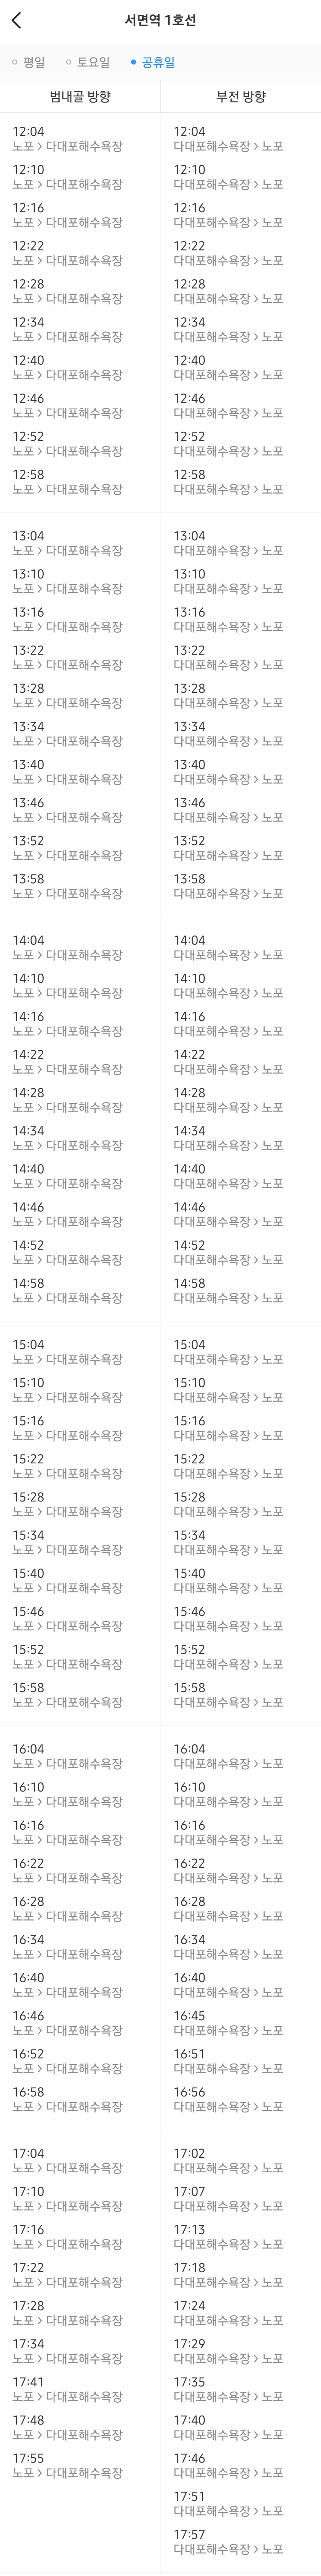 부산 지하철 1호선 서면역 주말(공휴일) 오후 열차 시간표